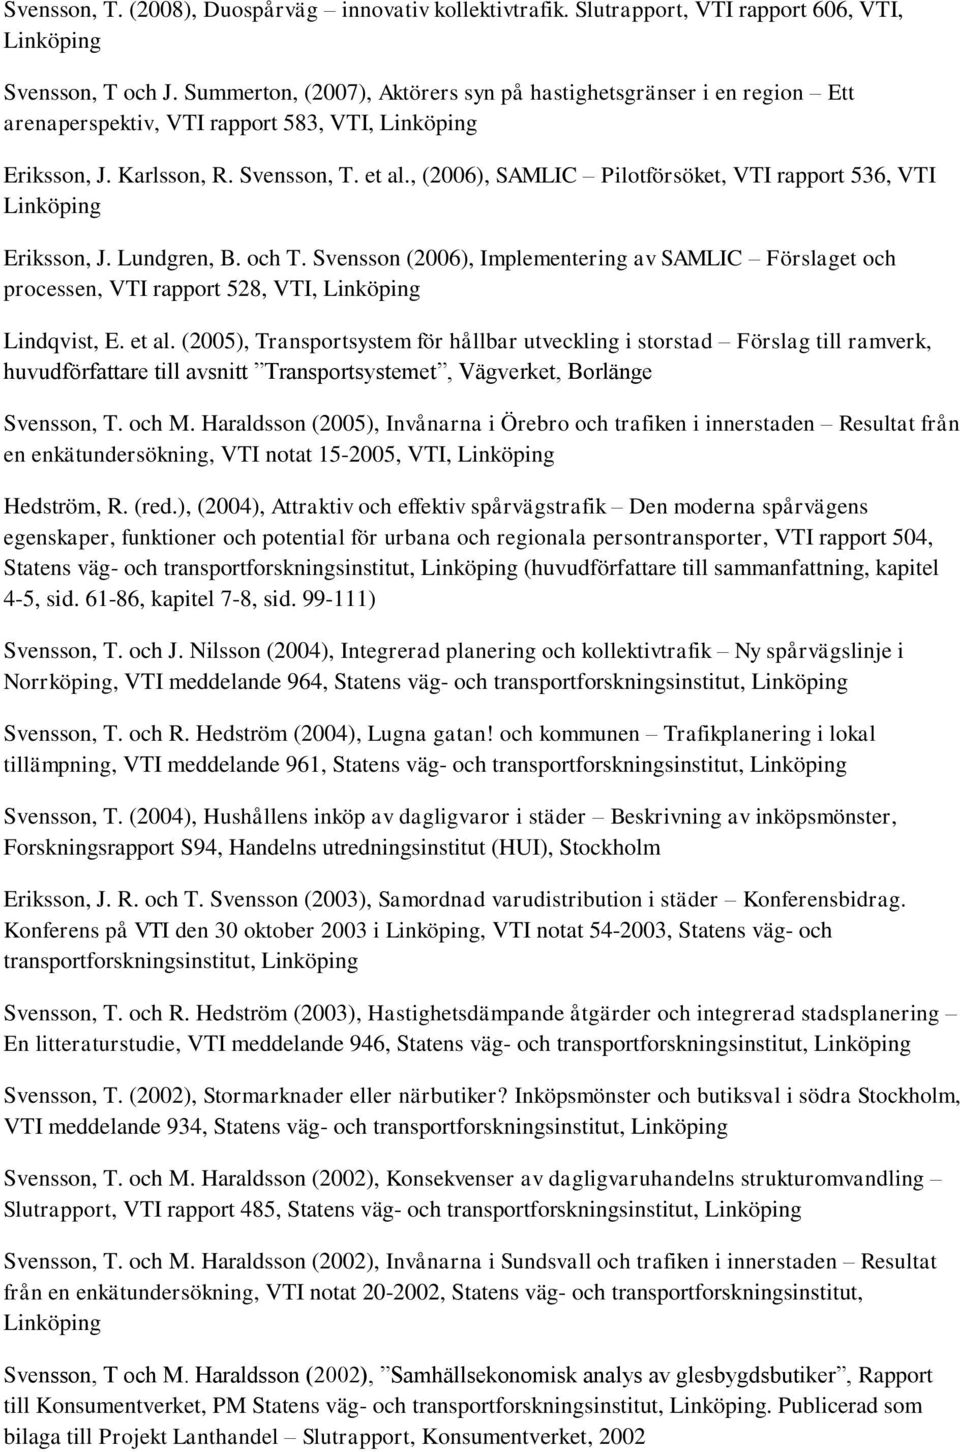 , (2006), SAMLIC Pilotförsöket, VTI rapport 536, VTI Eriksson, J. Lundgren, B. och T. Svensson (2006), Implementering av SAMLIC Förslaget och processen, VTI rapport 528, VTI, Lindqvist, E. et al.